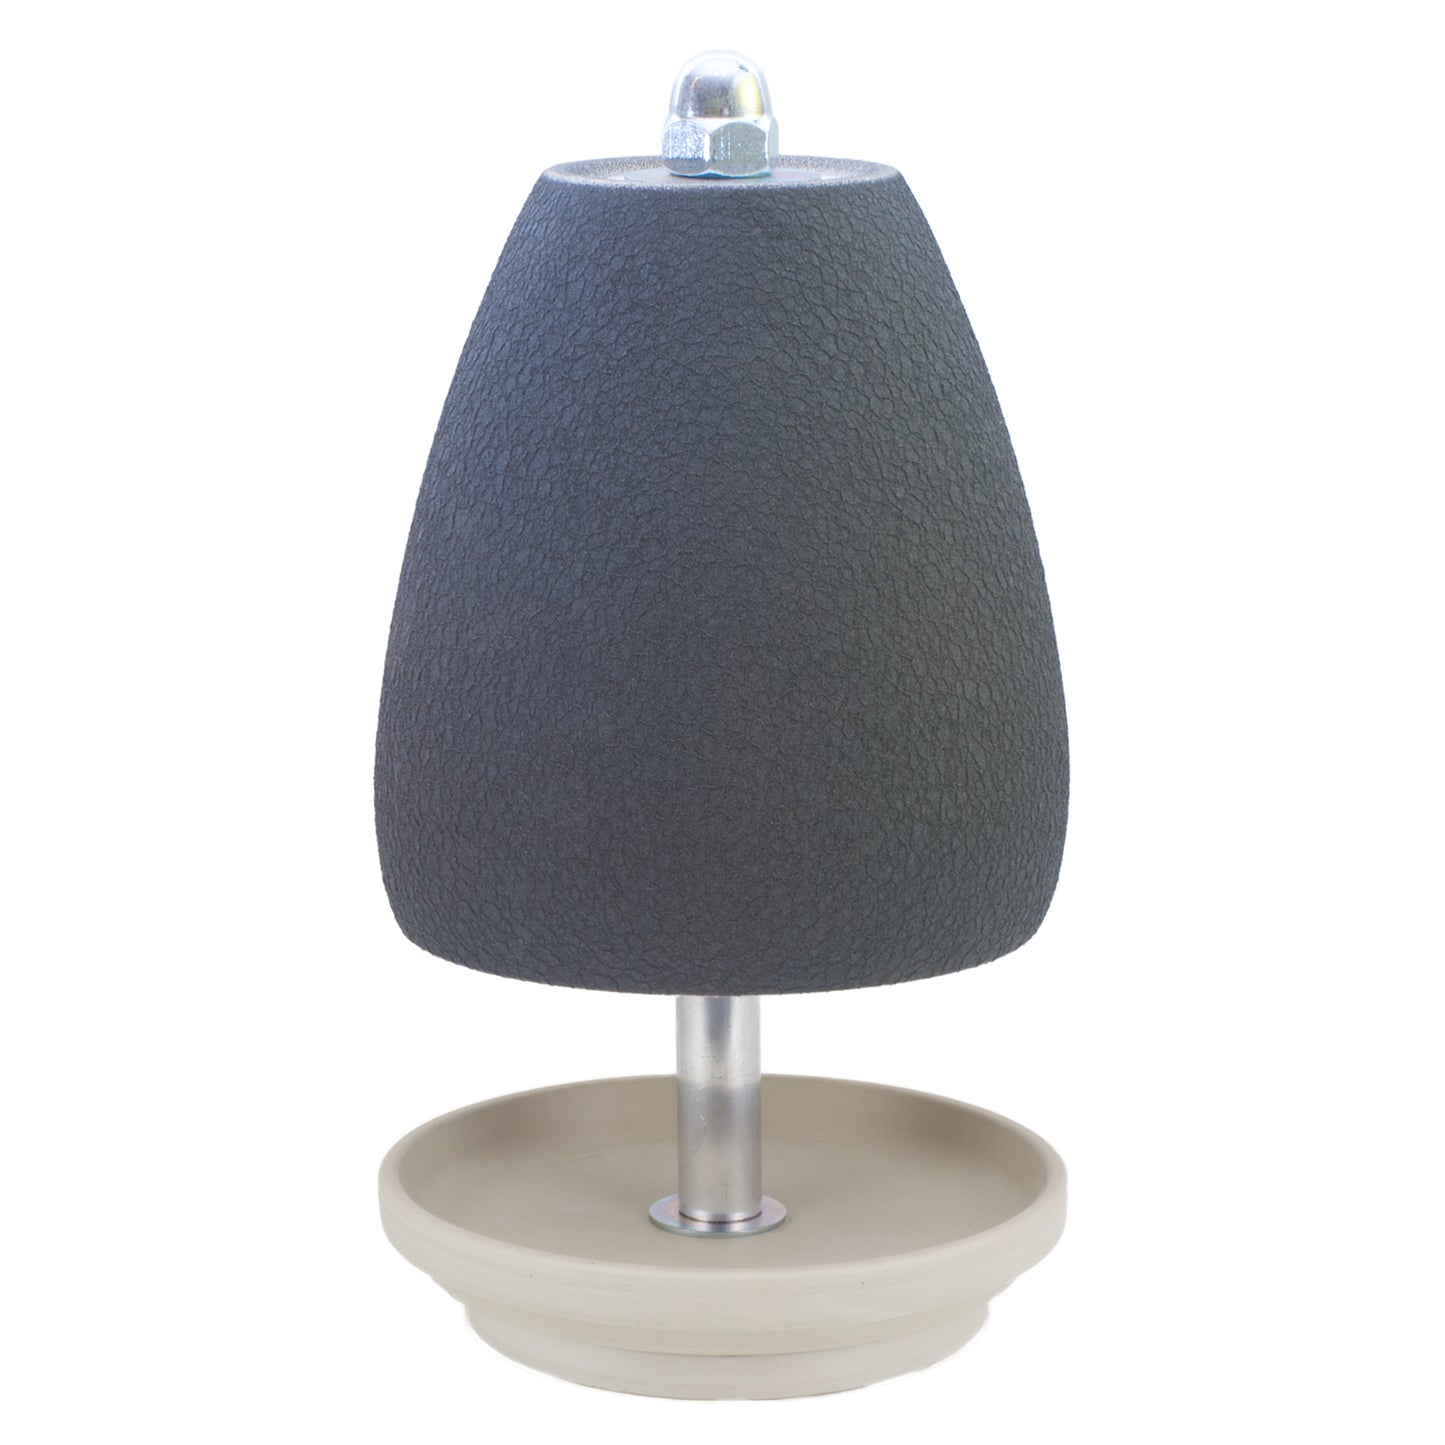 Unsere neueste und schönste Edition unserer Teelichtlampen "ORCHIDEE" - Exclusive Keramik im Original Hornet-Design!